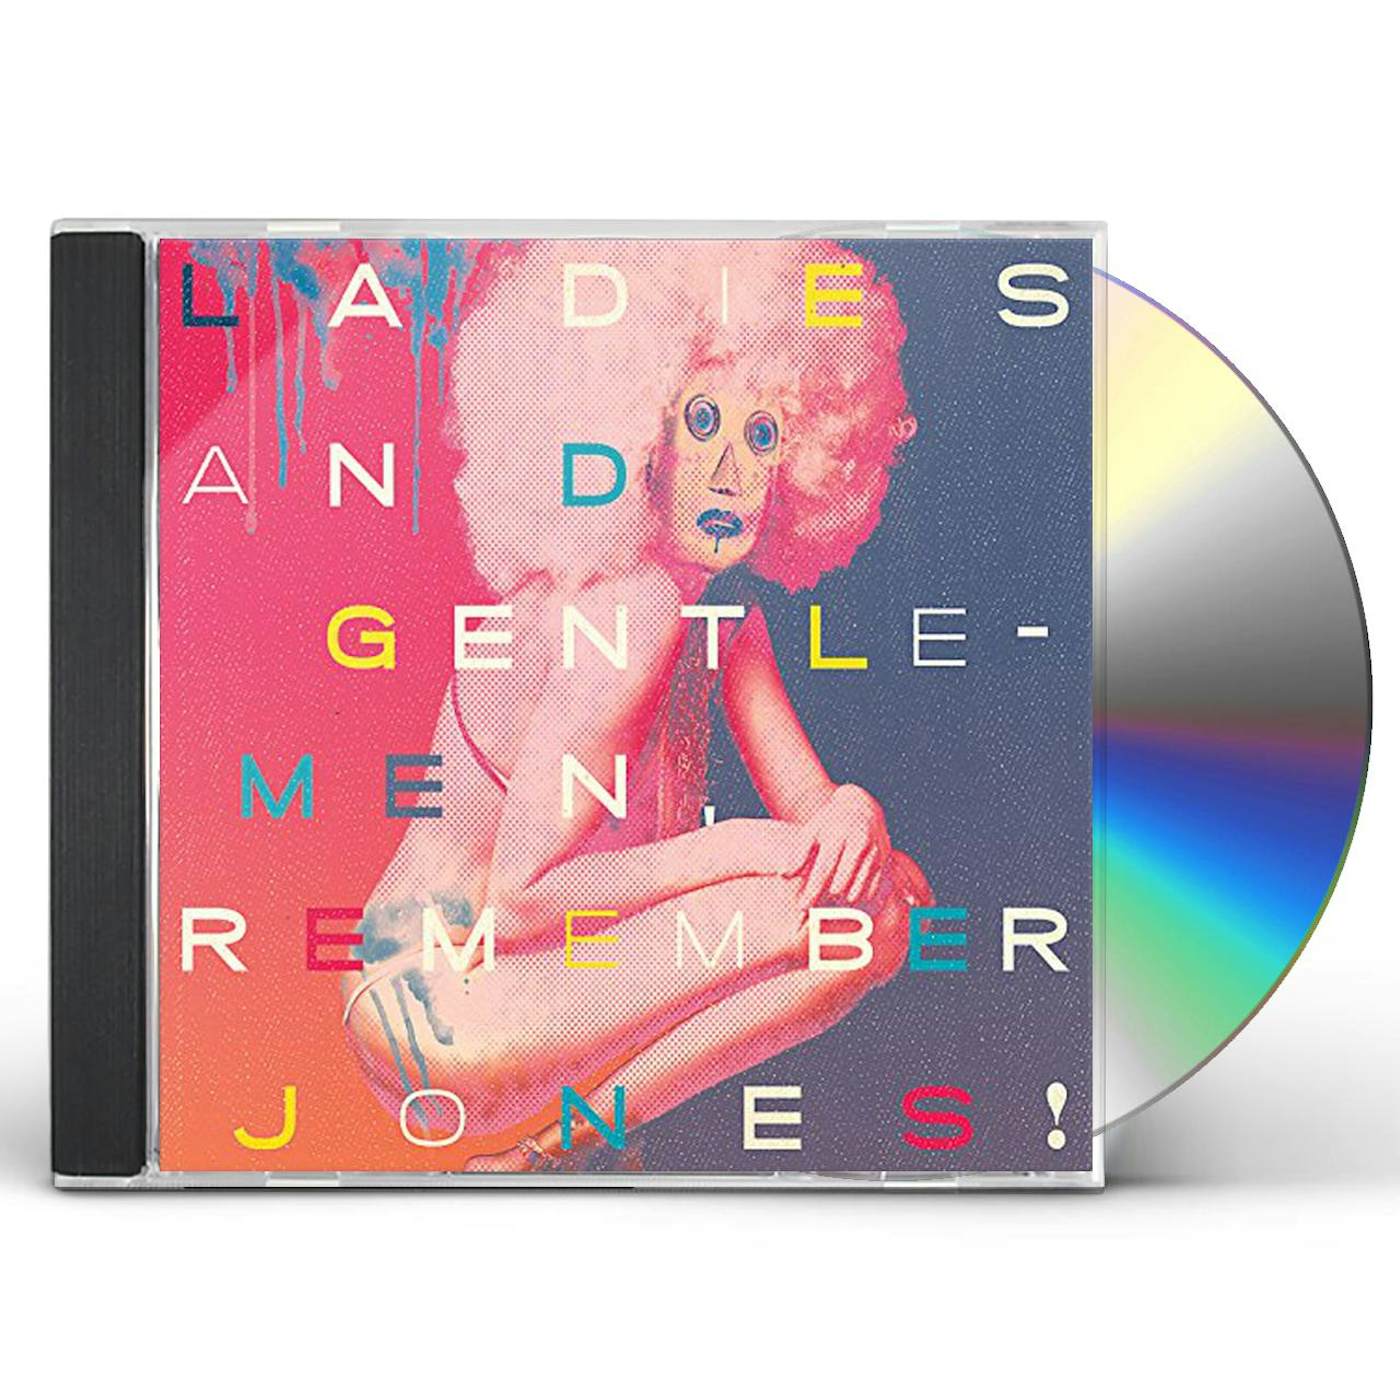 LADIES & GENTLEMEN REMEMBER JONES CD